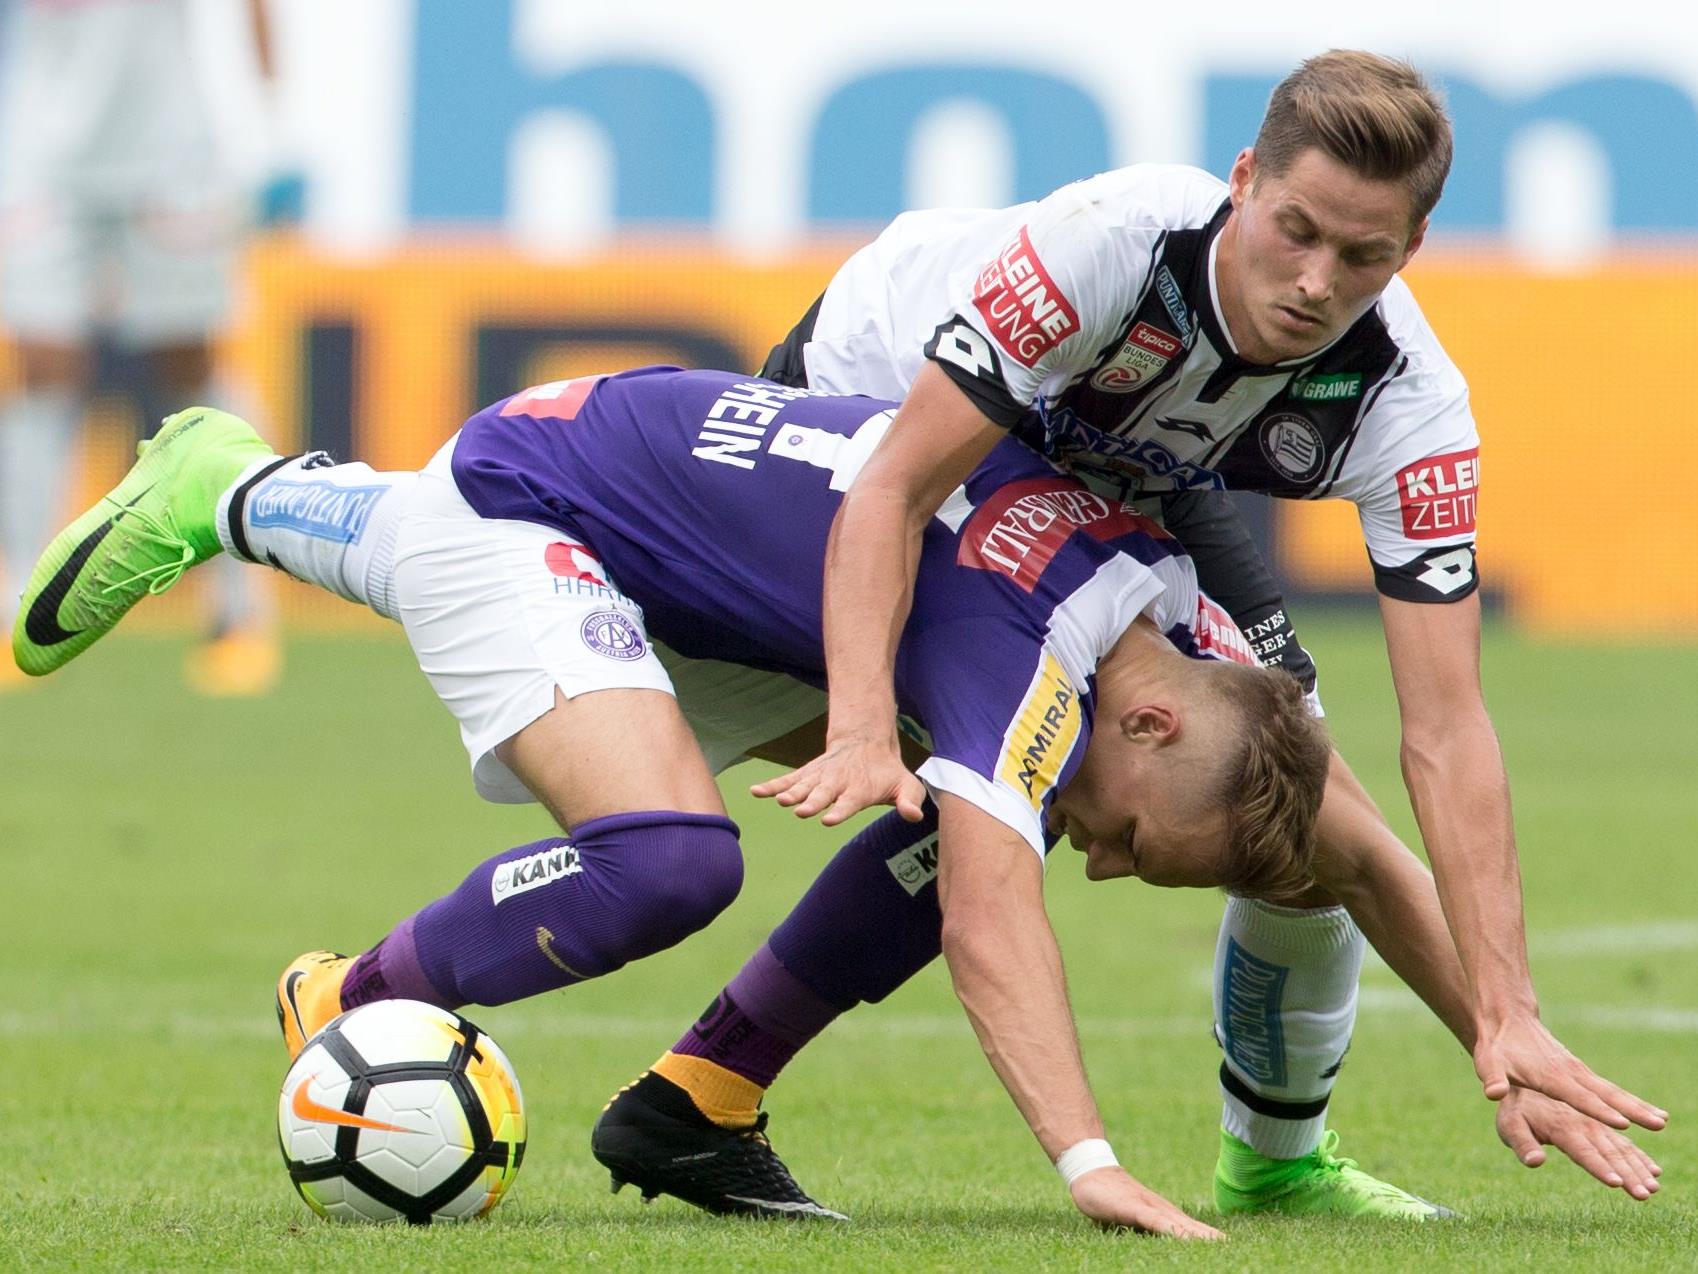 vlnr.: Christoph Mondschein (FK Austria Wien) und Thorsten Röcher (SK Sturm Graz) beim Spiel